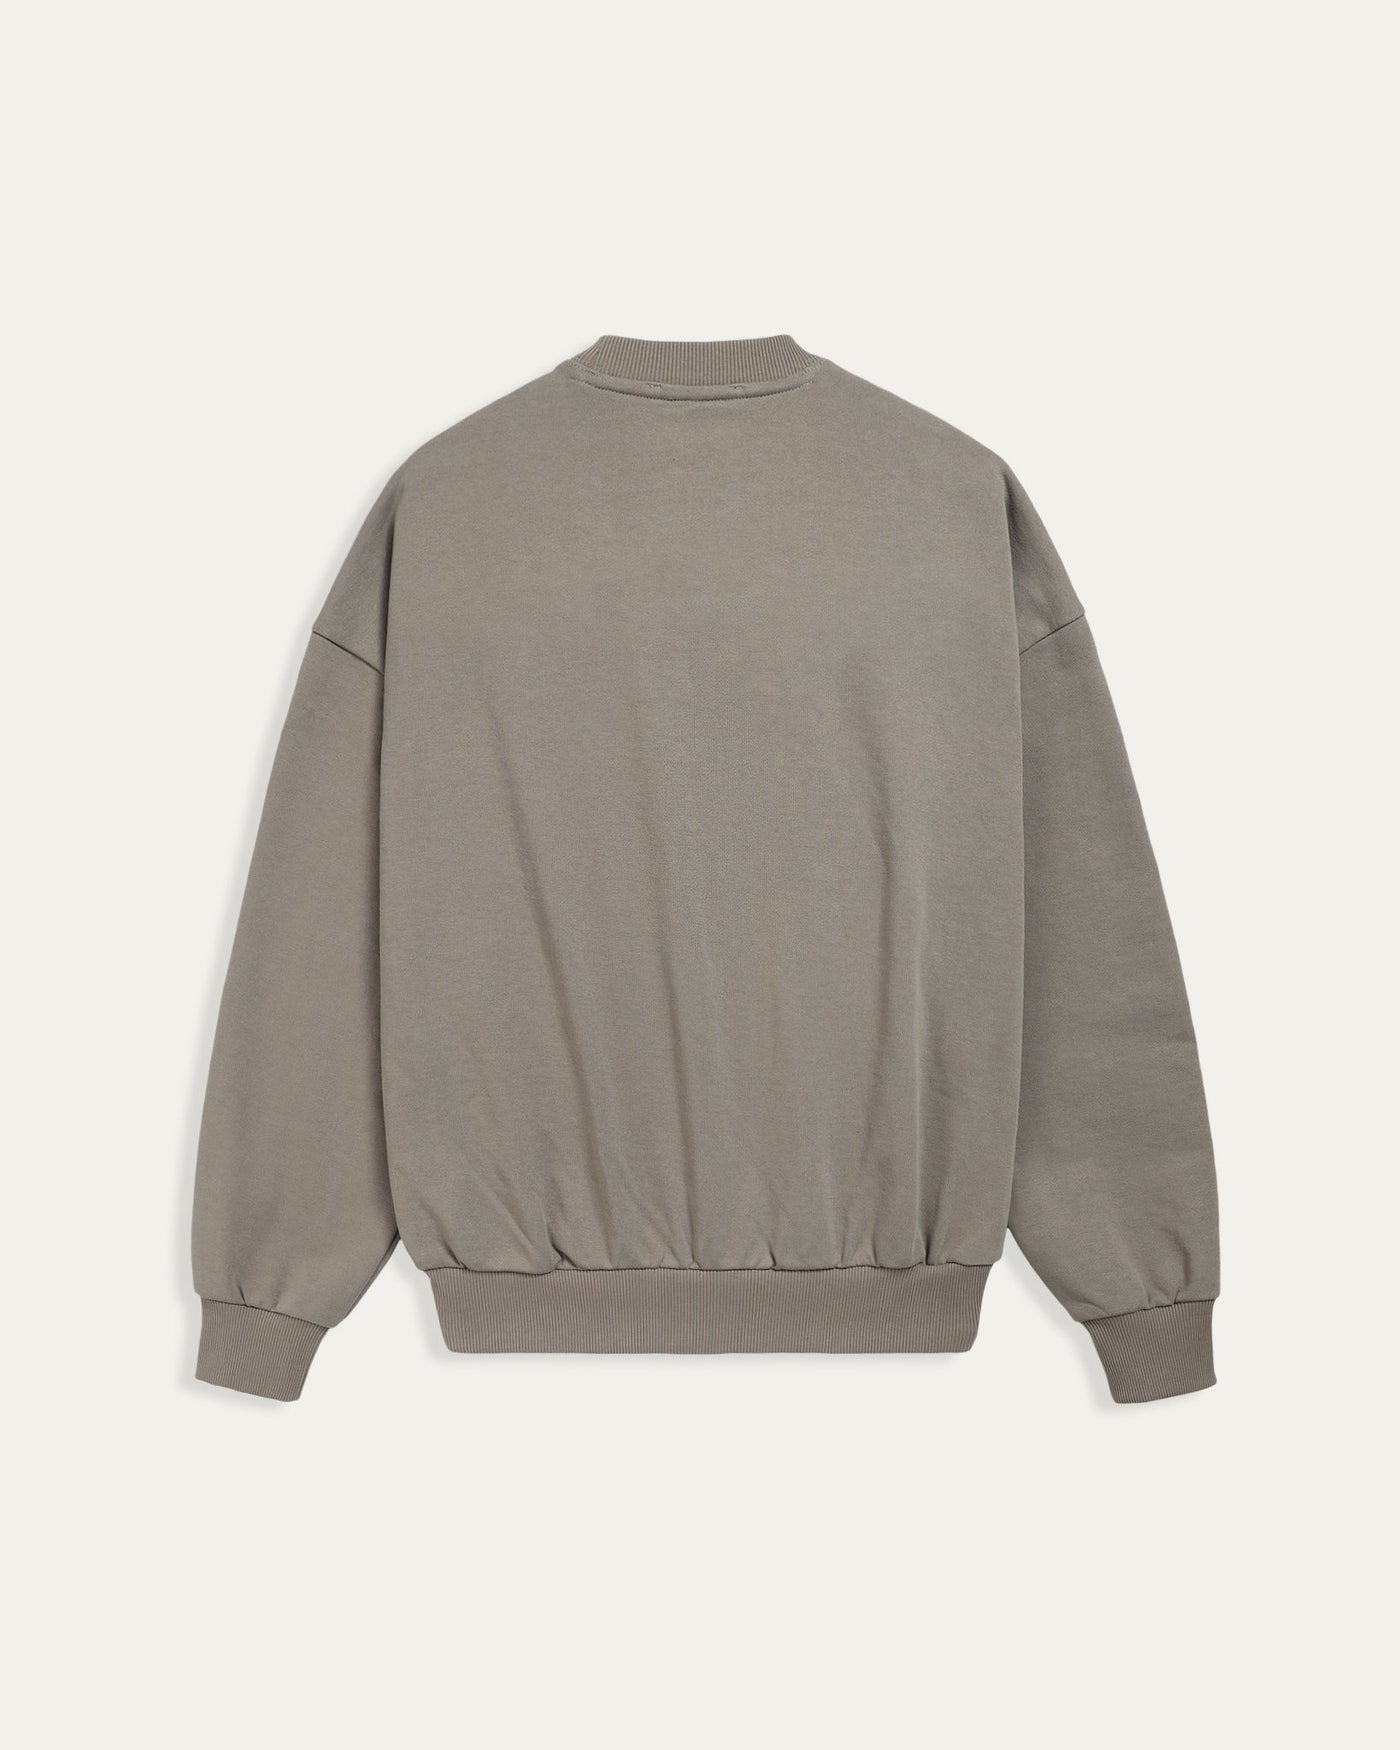 TOBI Regular Sweater - Cement - TOBI